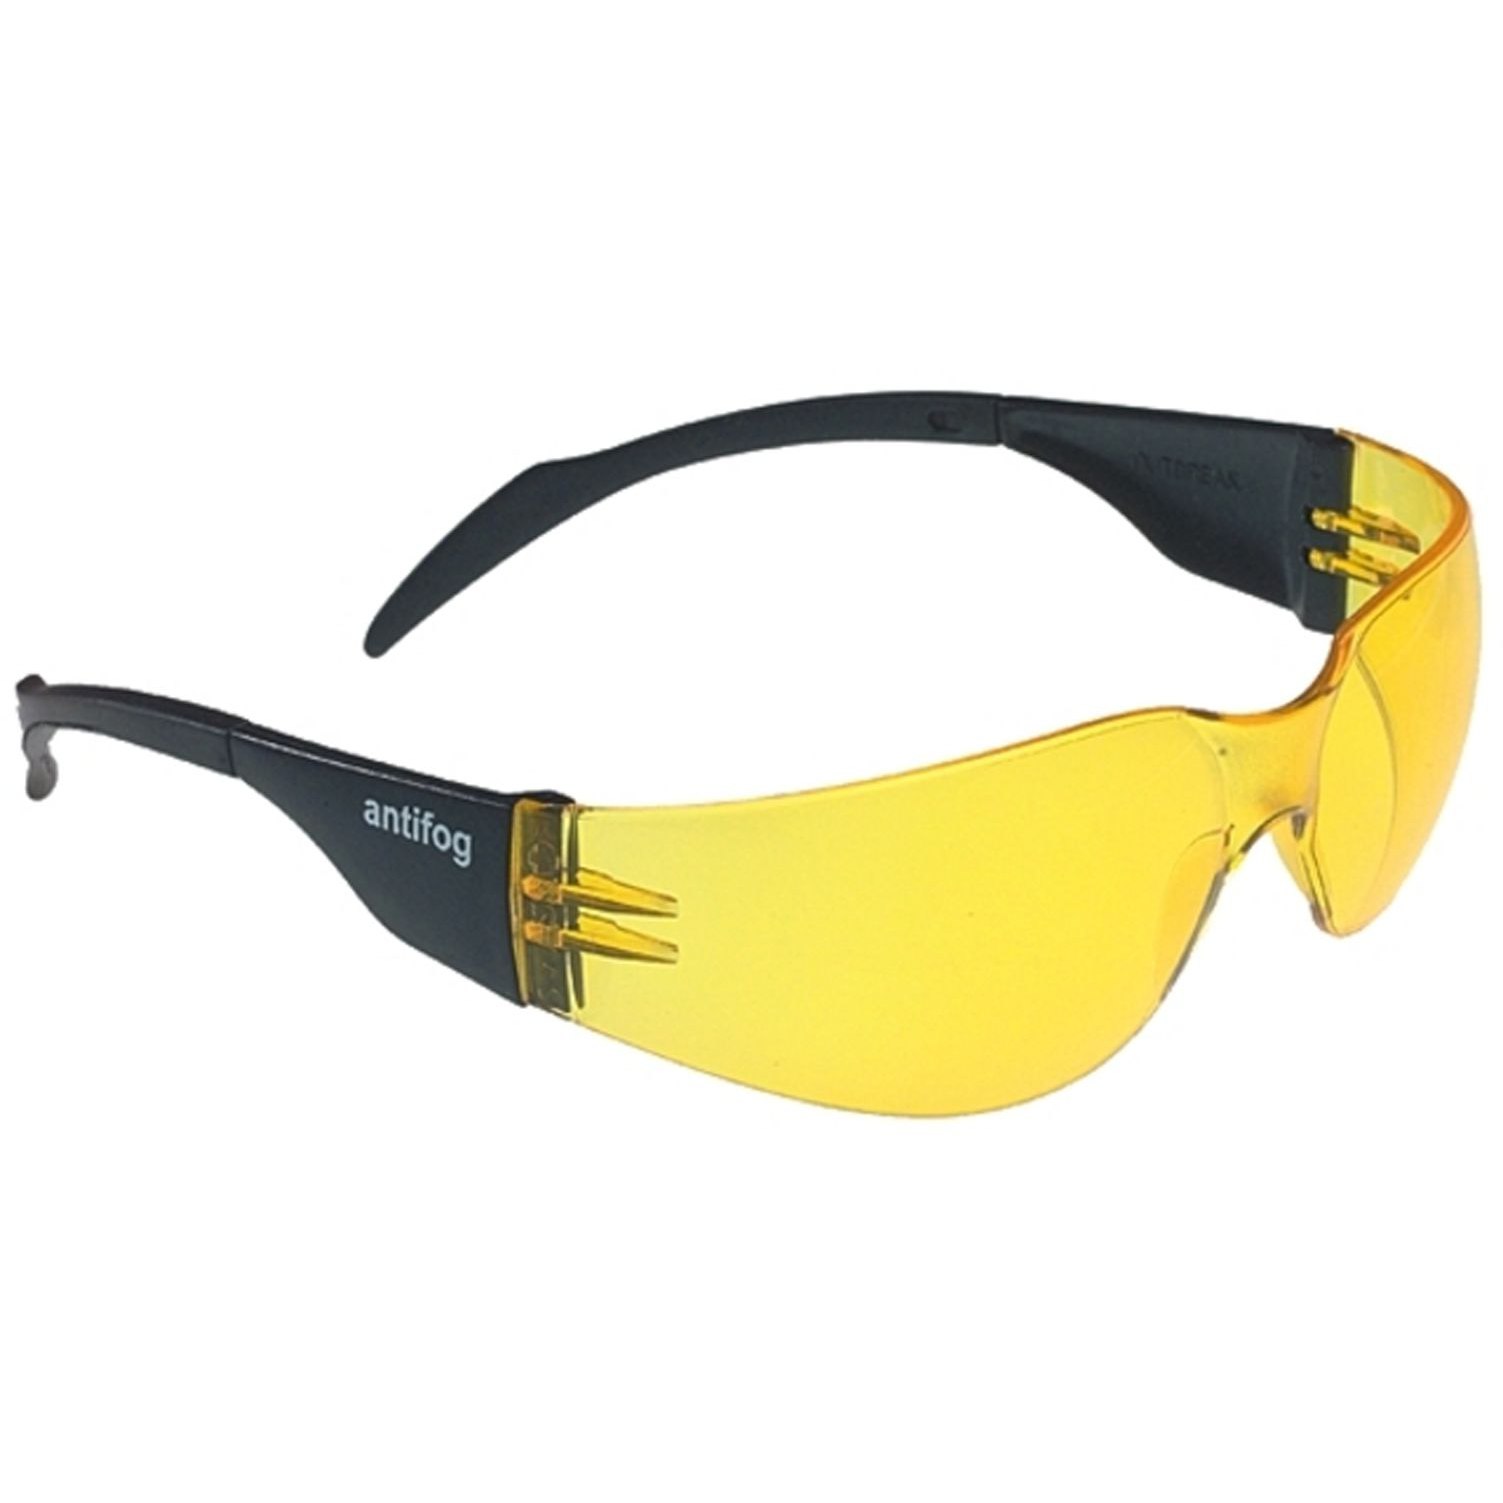 Produktbild von Swiss Eye Outbreak Brille 14004 - Black - Yellow